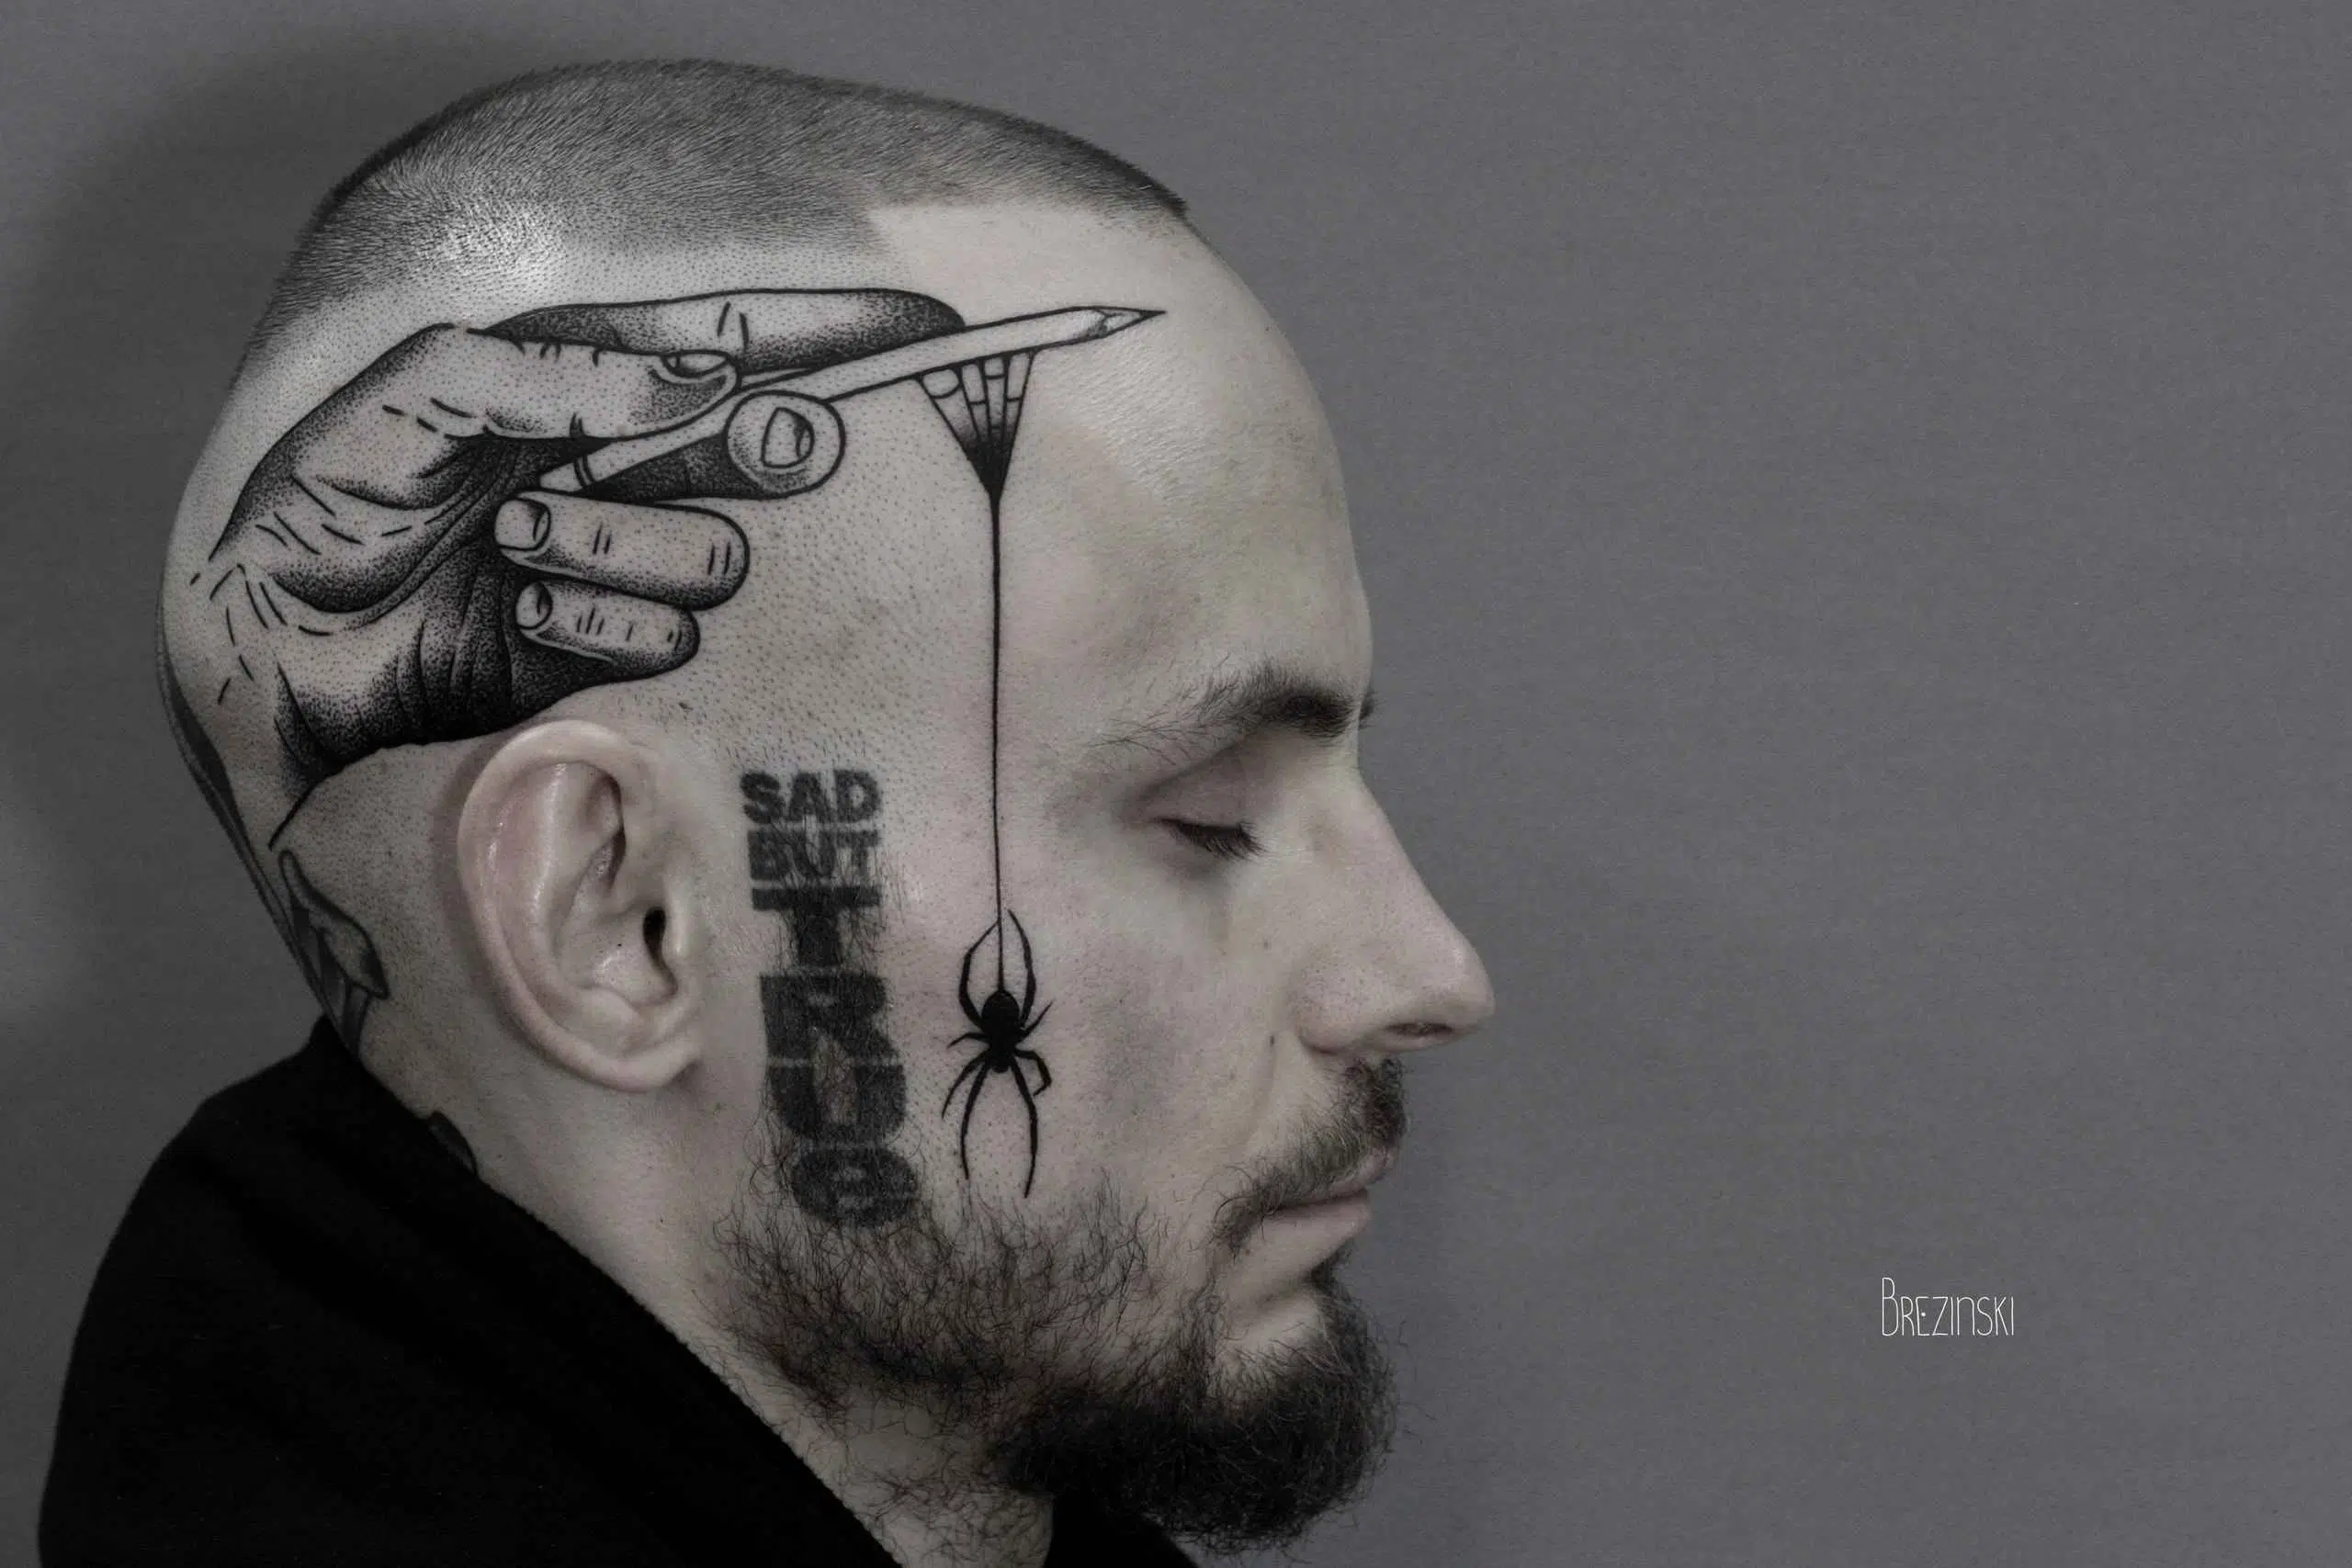 Ilya Brezinski tatuaje